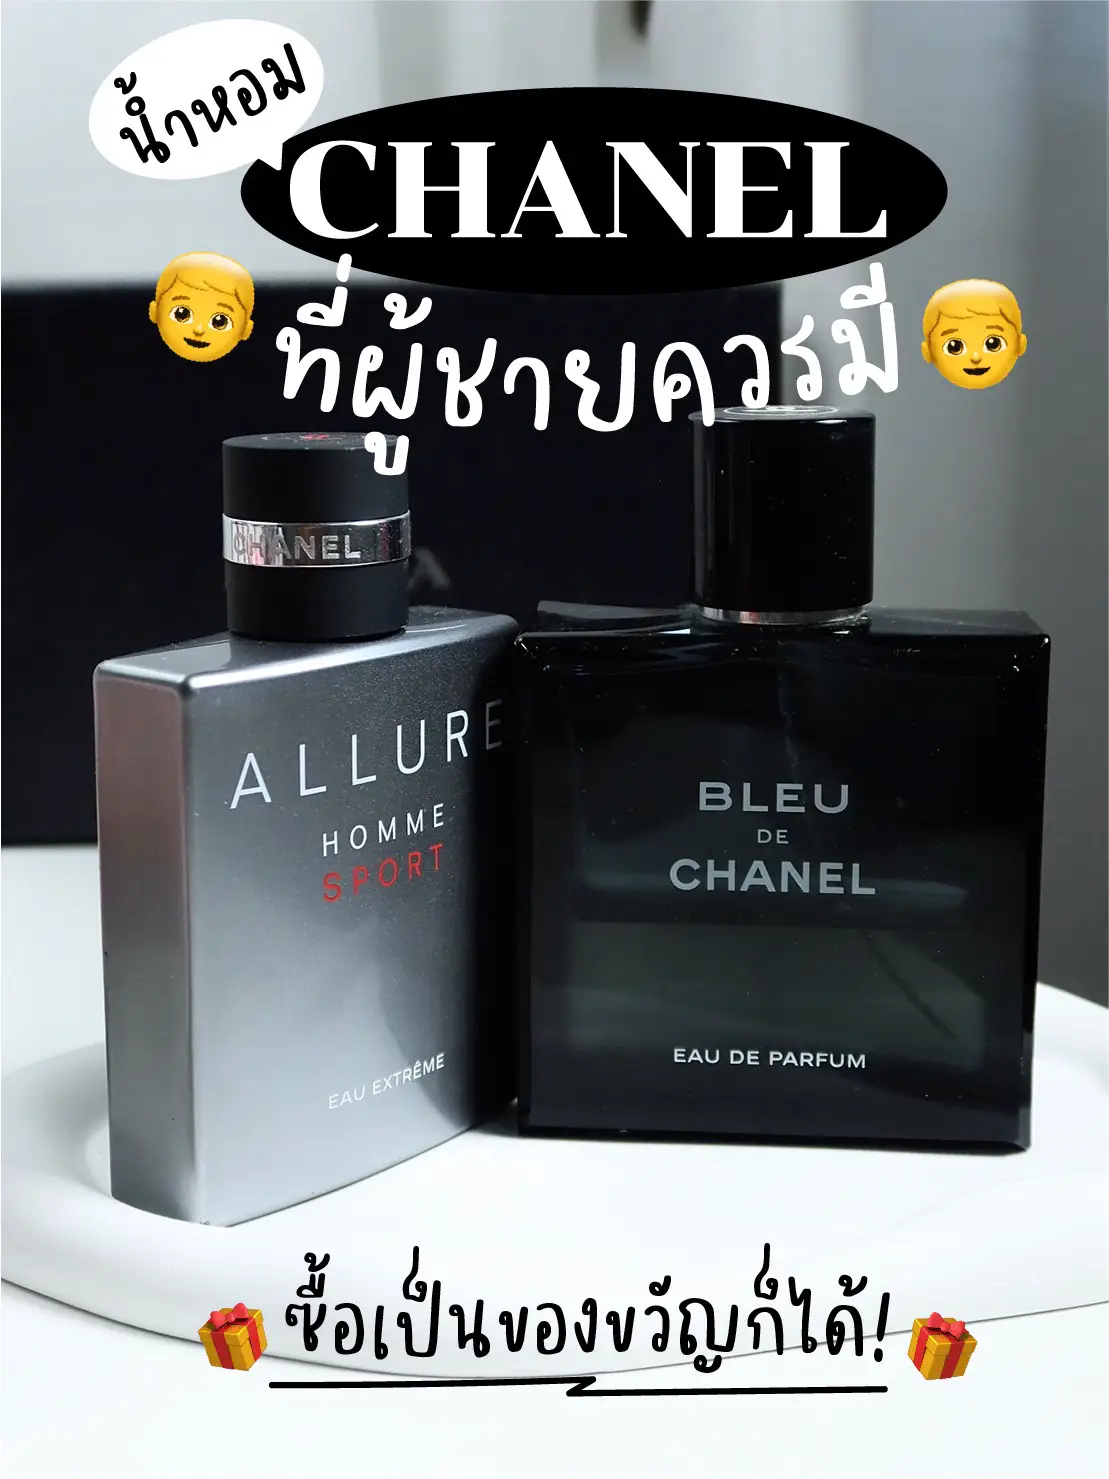 Chanel Allure Homme Sport Eau Extreme - Eau de Parfum (edp/3x20ml) (refill)